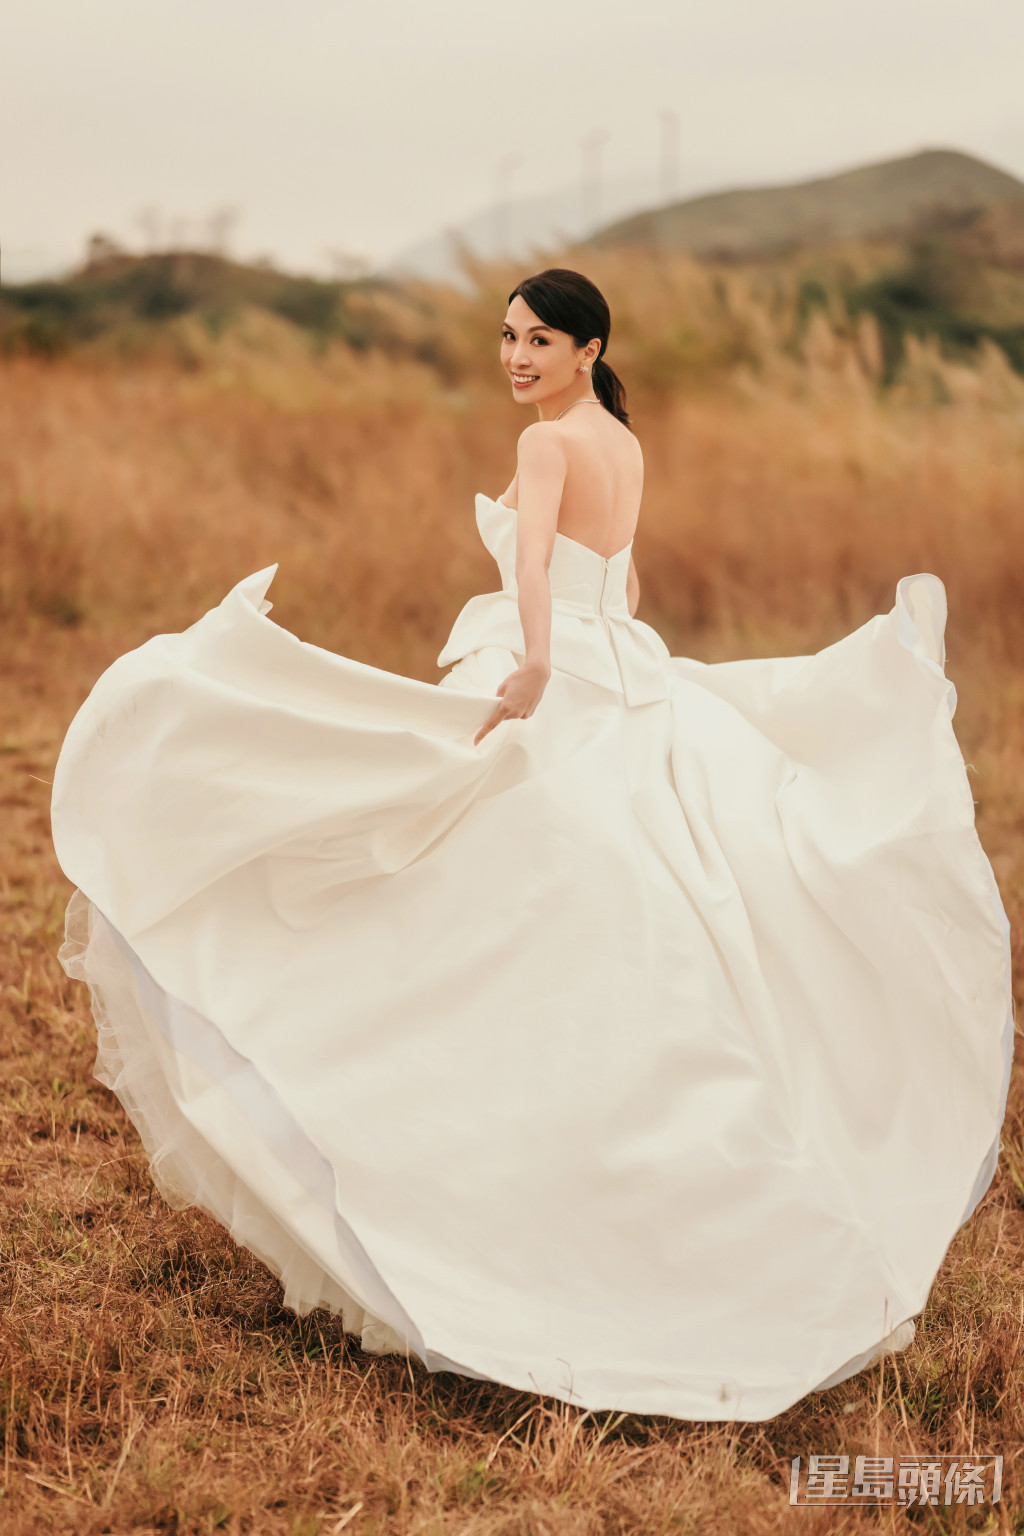 陳煒去年9月嫁醫生陳國強的婚紗亦是有何國鉦設計。​